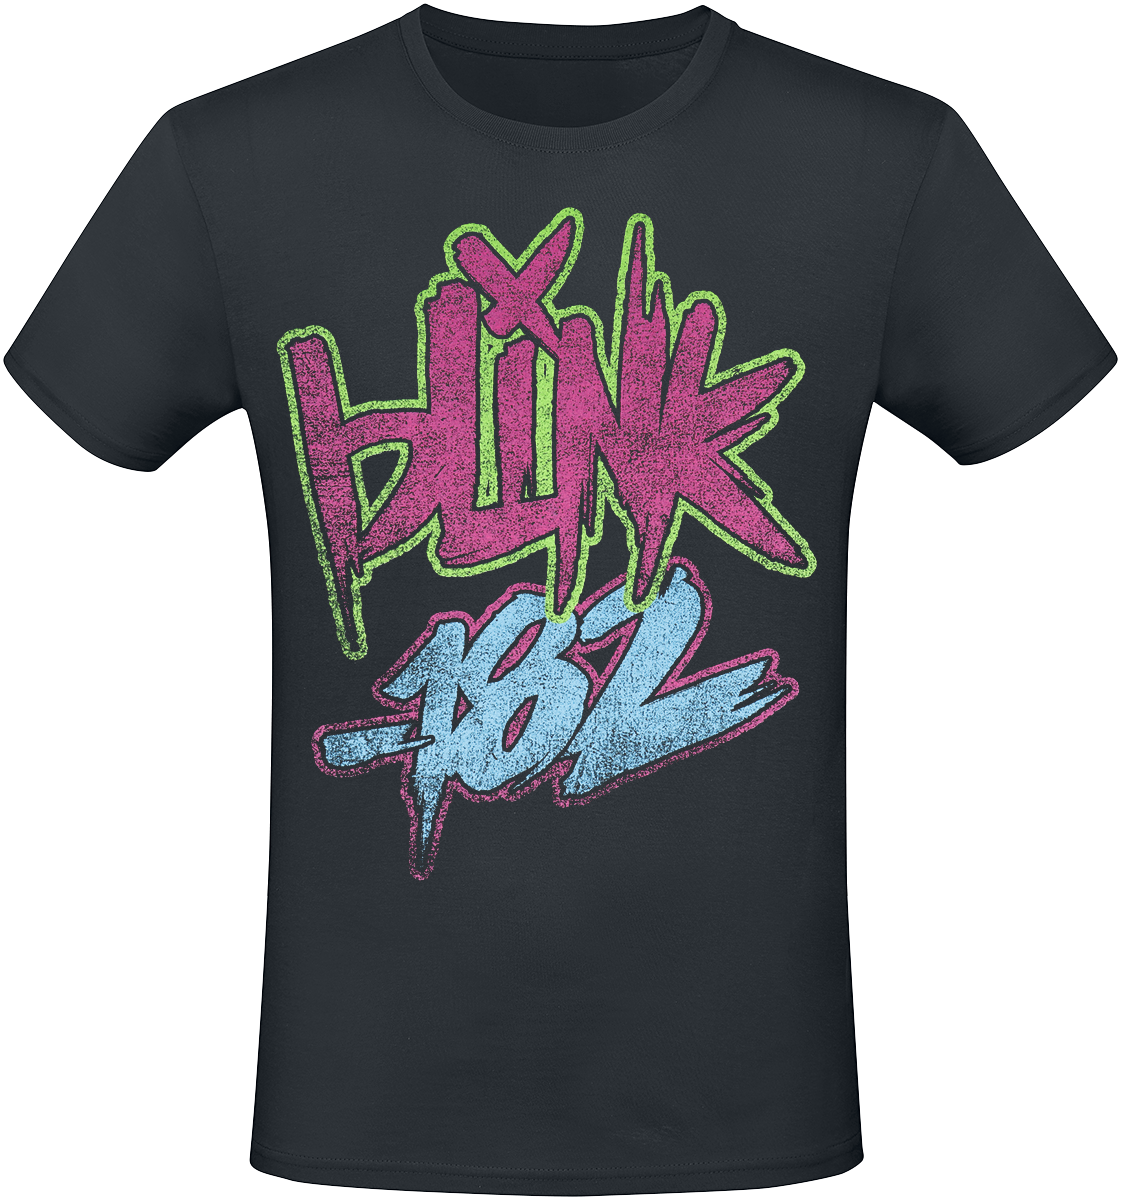 Blink-182 - Text - T-Shirt - schwarz